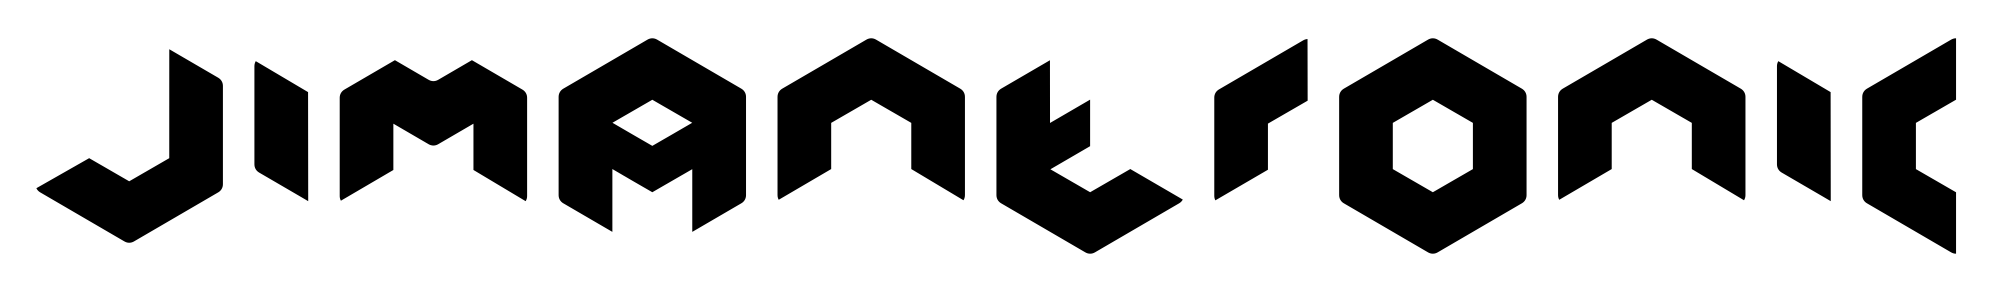 Jimantronic logo